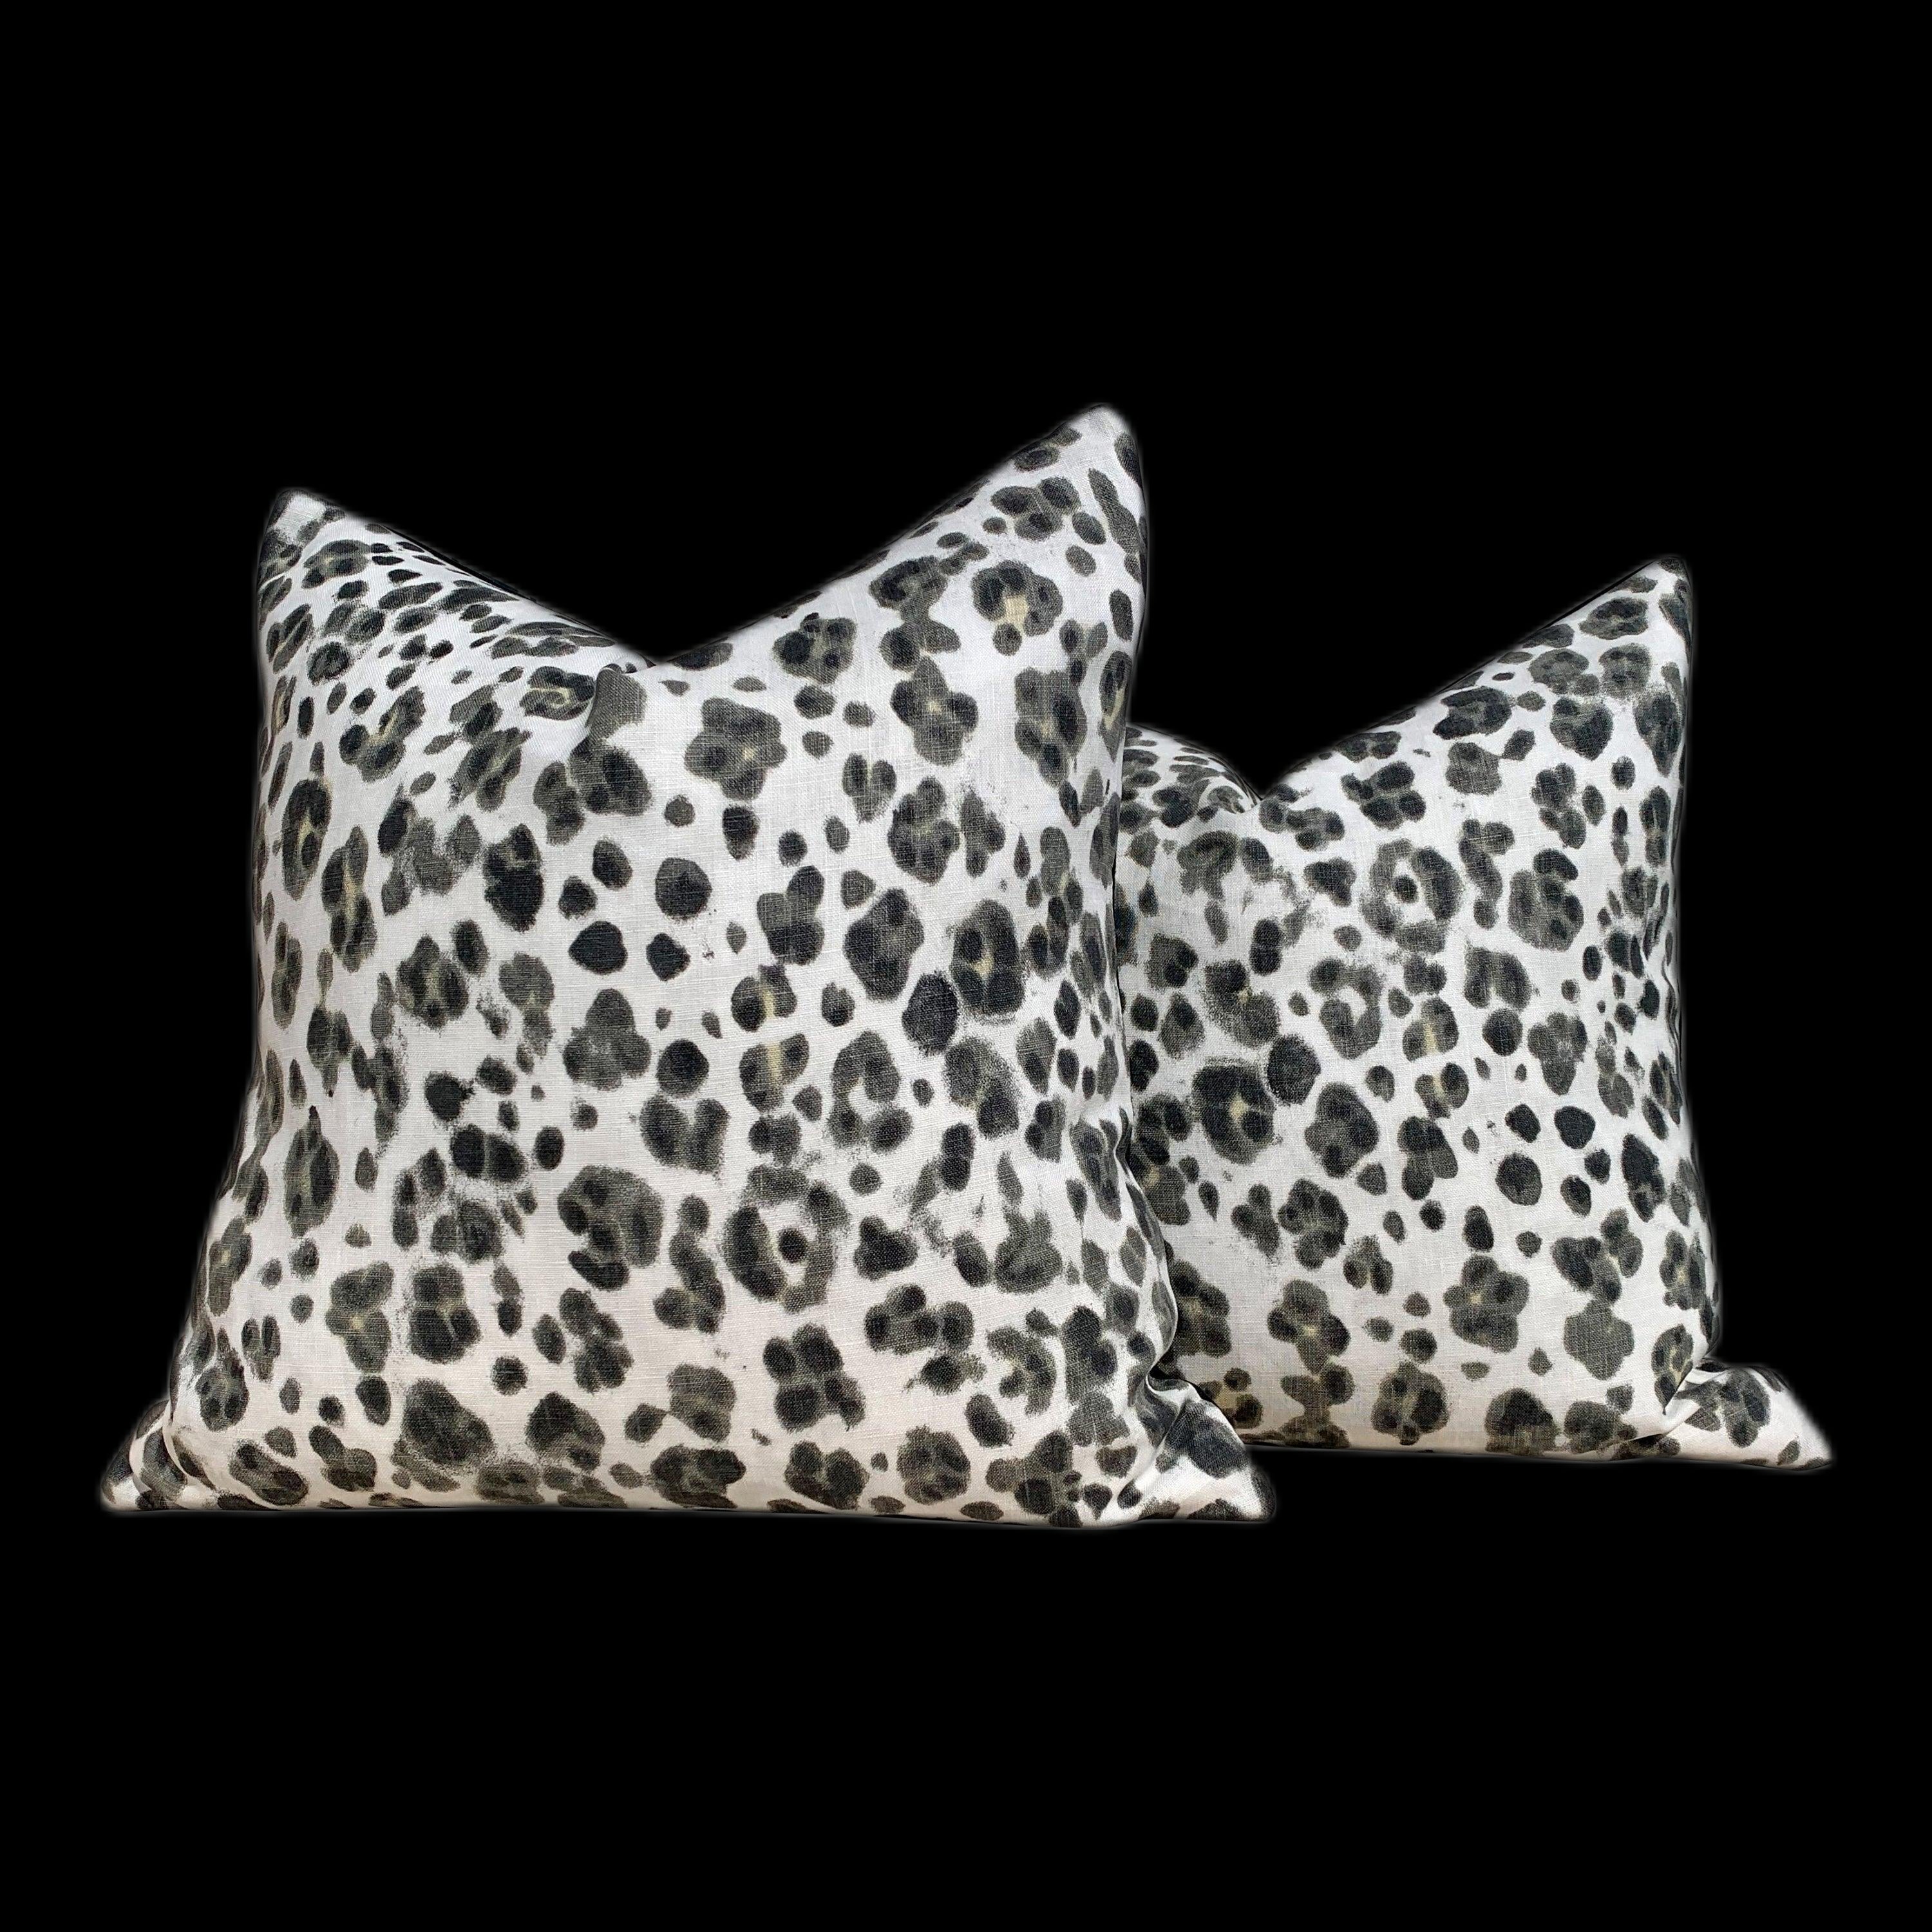 Panthera Linen Pillow Cover in Charcoal. Animal Skin Lumbar Pillow, accent pillow sham, decorative pillow throw, extra long lumbar pillow